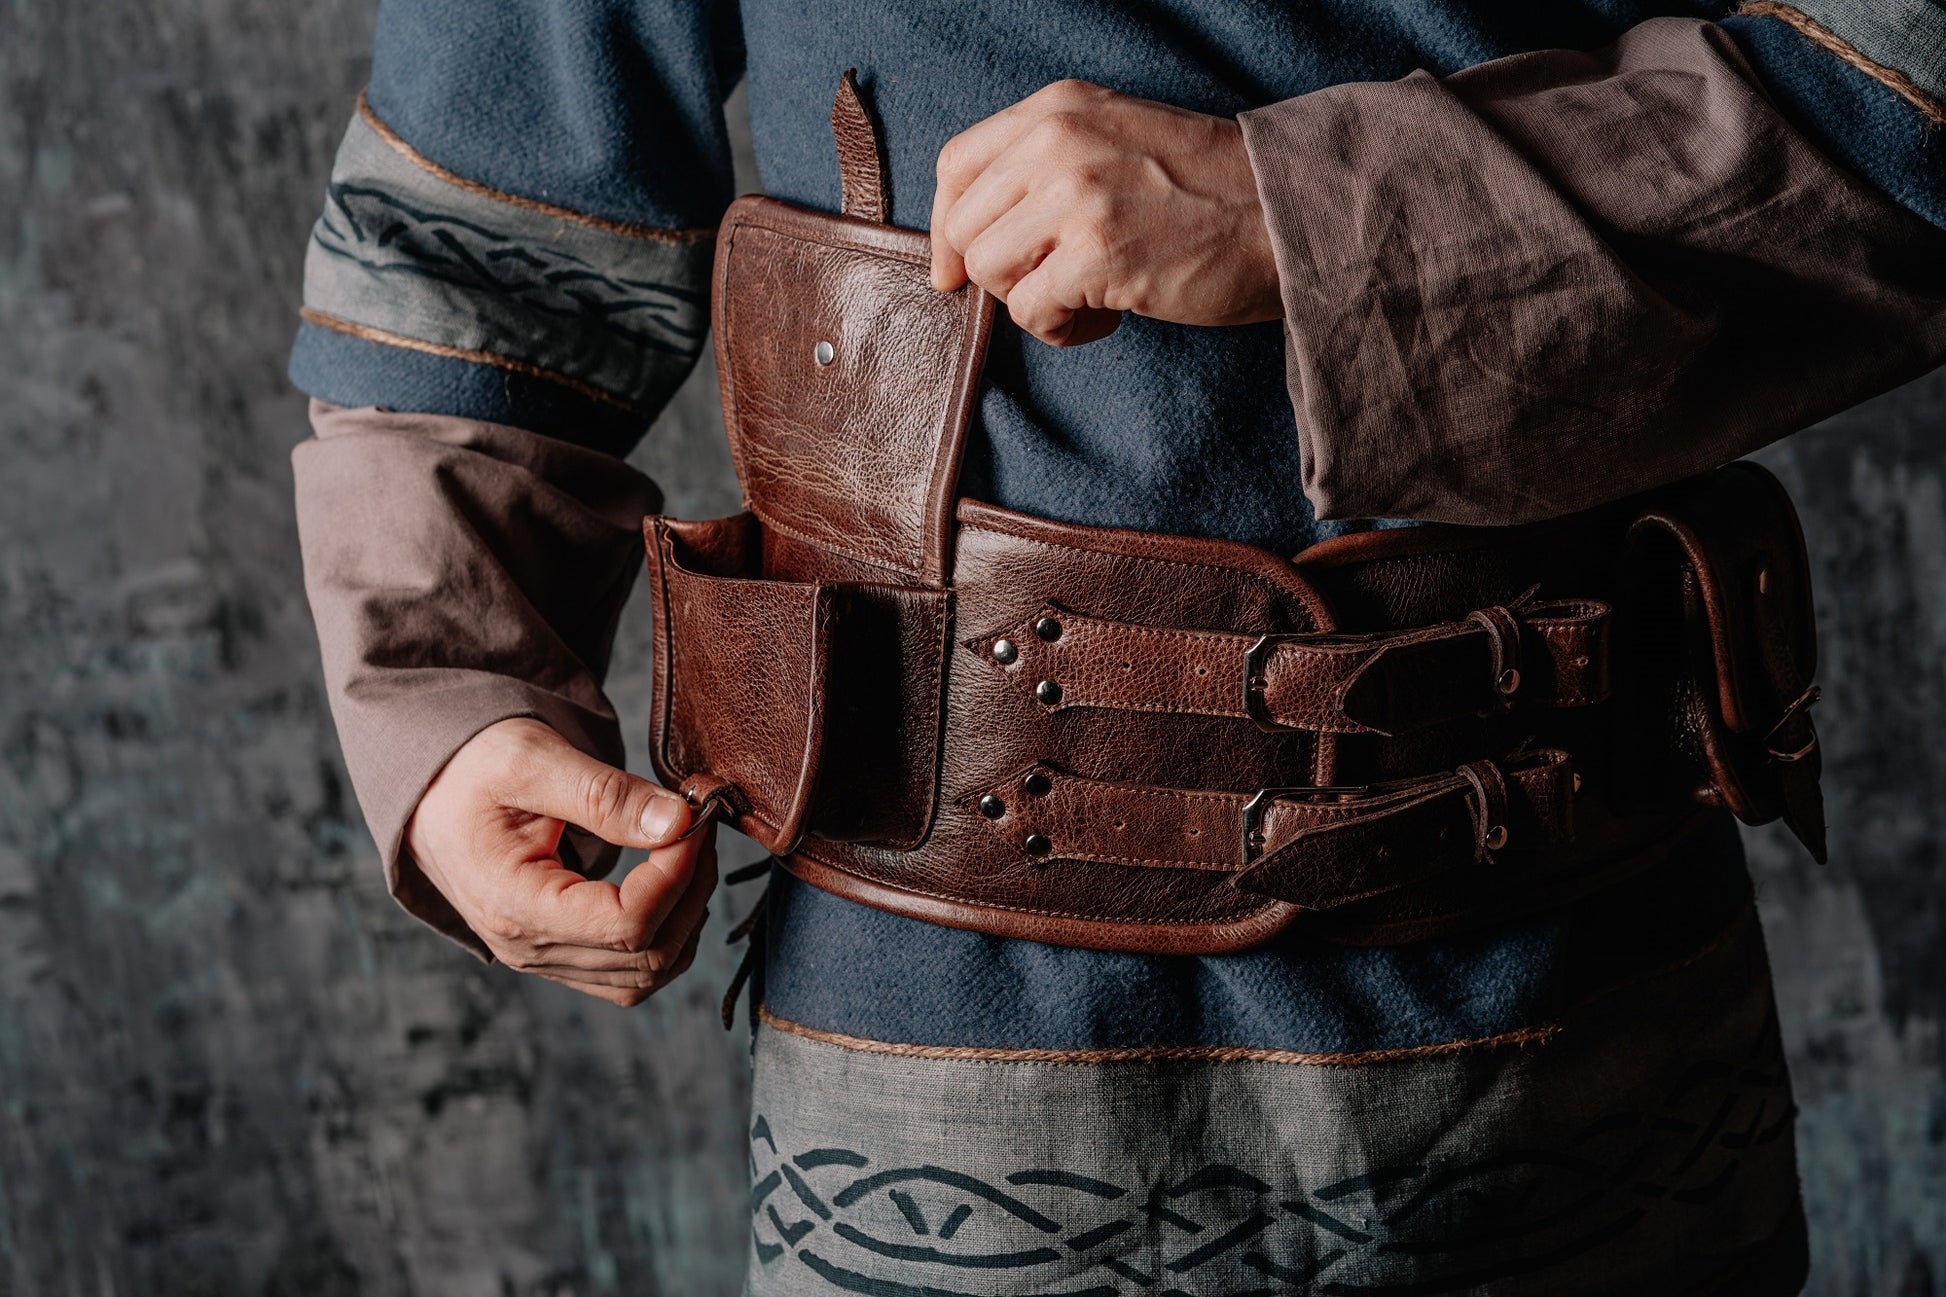 Leather Renaissance Belt